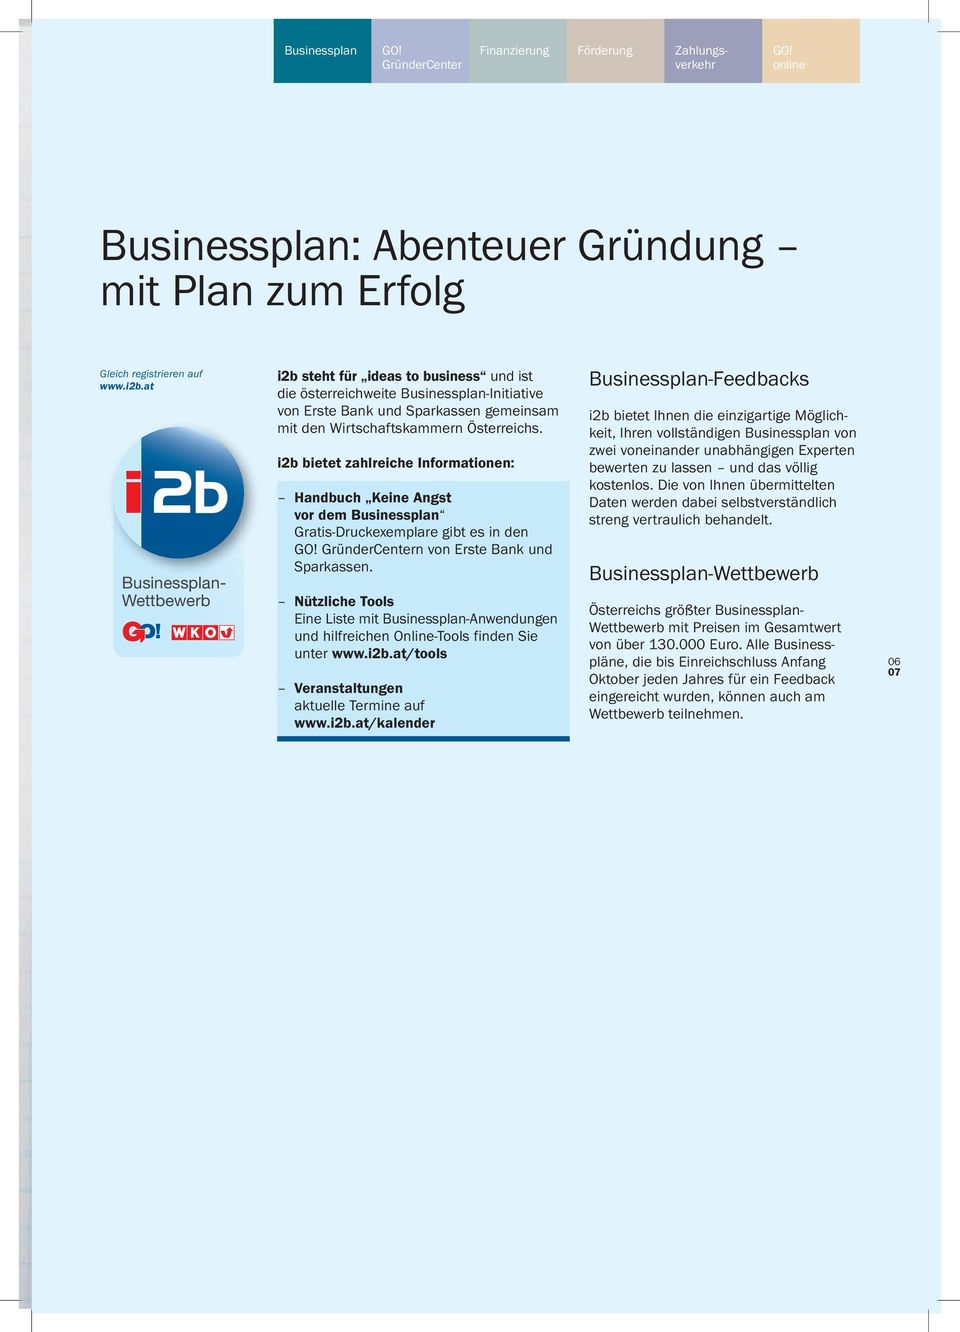 i2b bietet zahlreiche Informationen: Handbuch Keine Angst vor dem Businessplan Gratis-Druckexemplare gibt es in den GründerCentern von Erste Bank und Sparkassen.